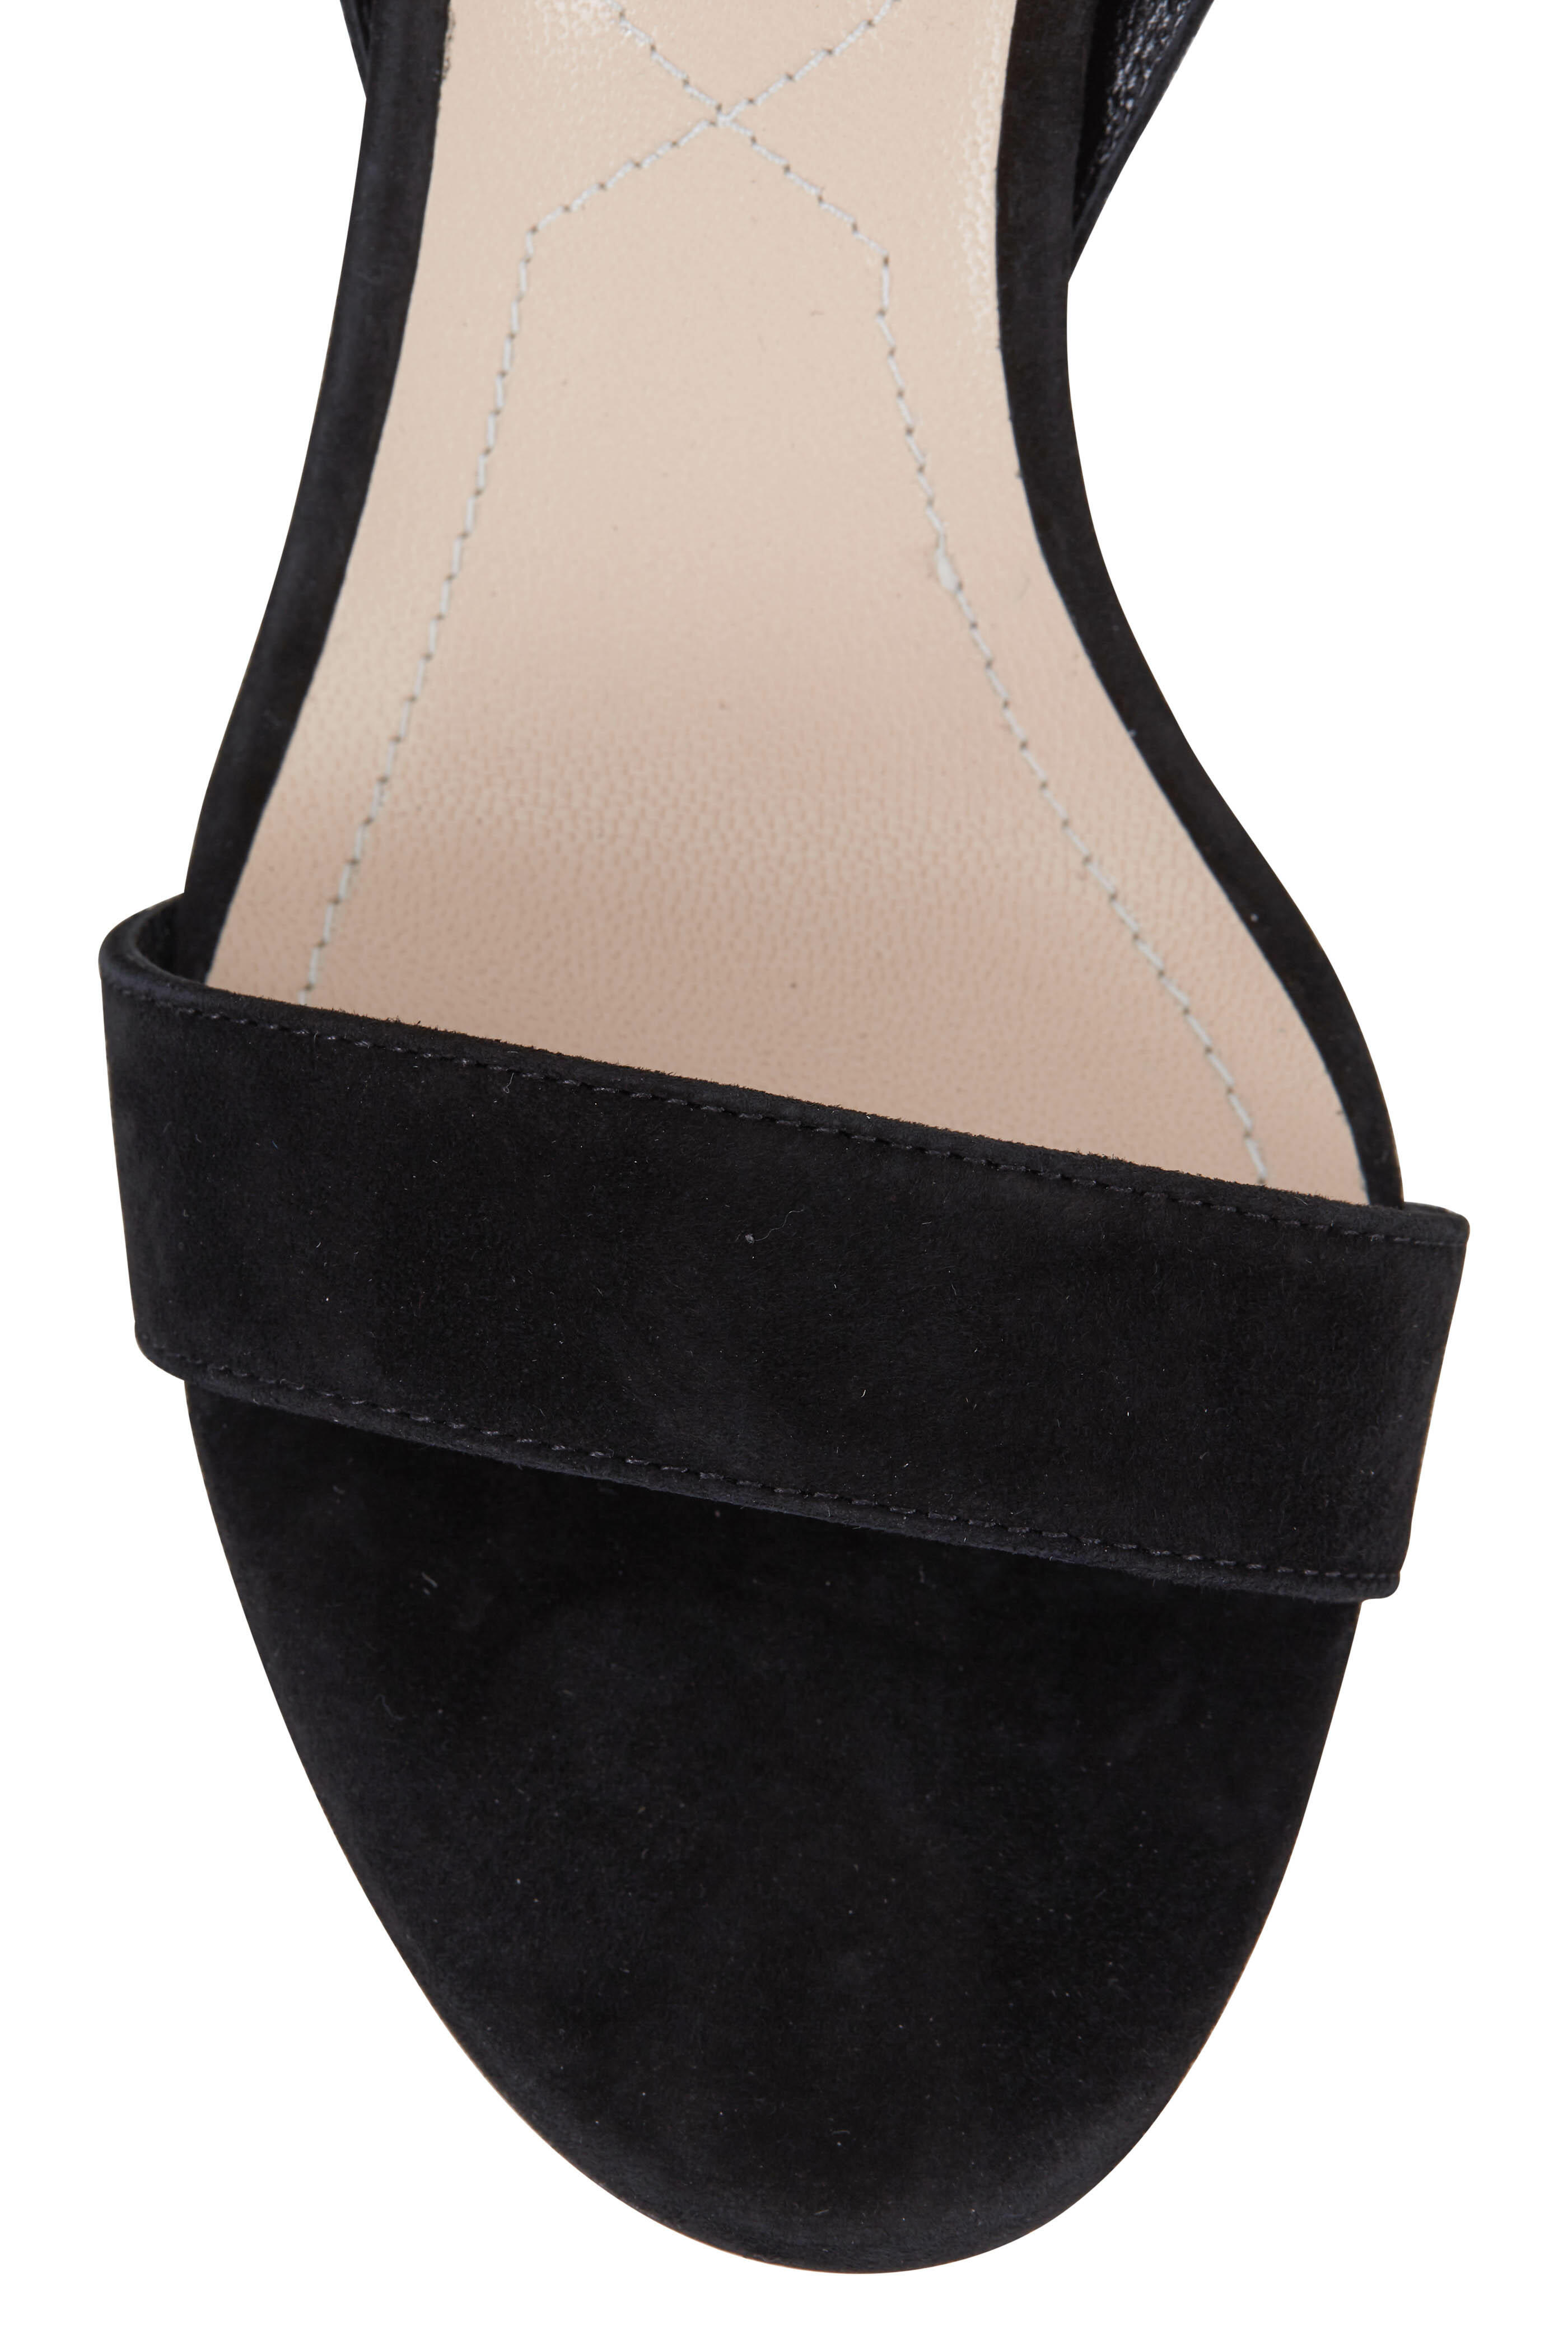 Nicholas Kirkwood Women's Nicholas Kirkwood Lola Pearl Sandals In Black  Suede Heels Pumps